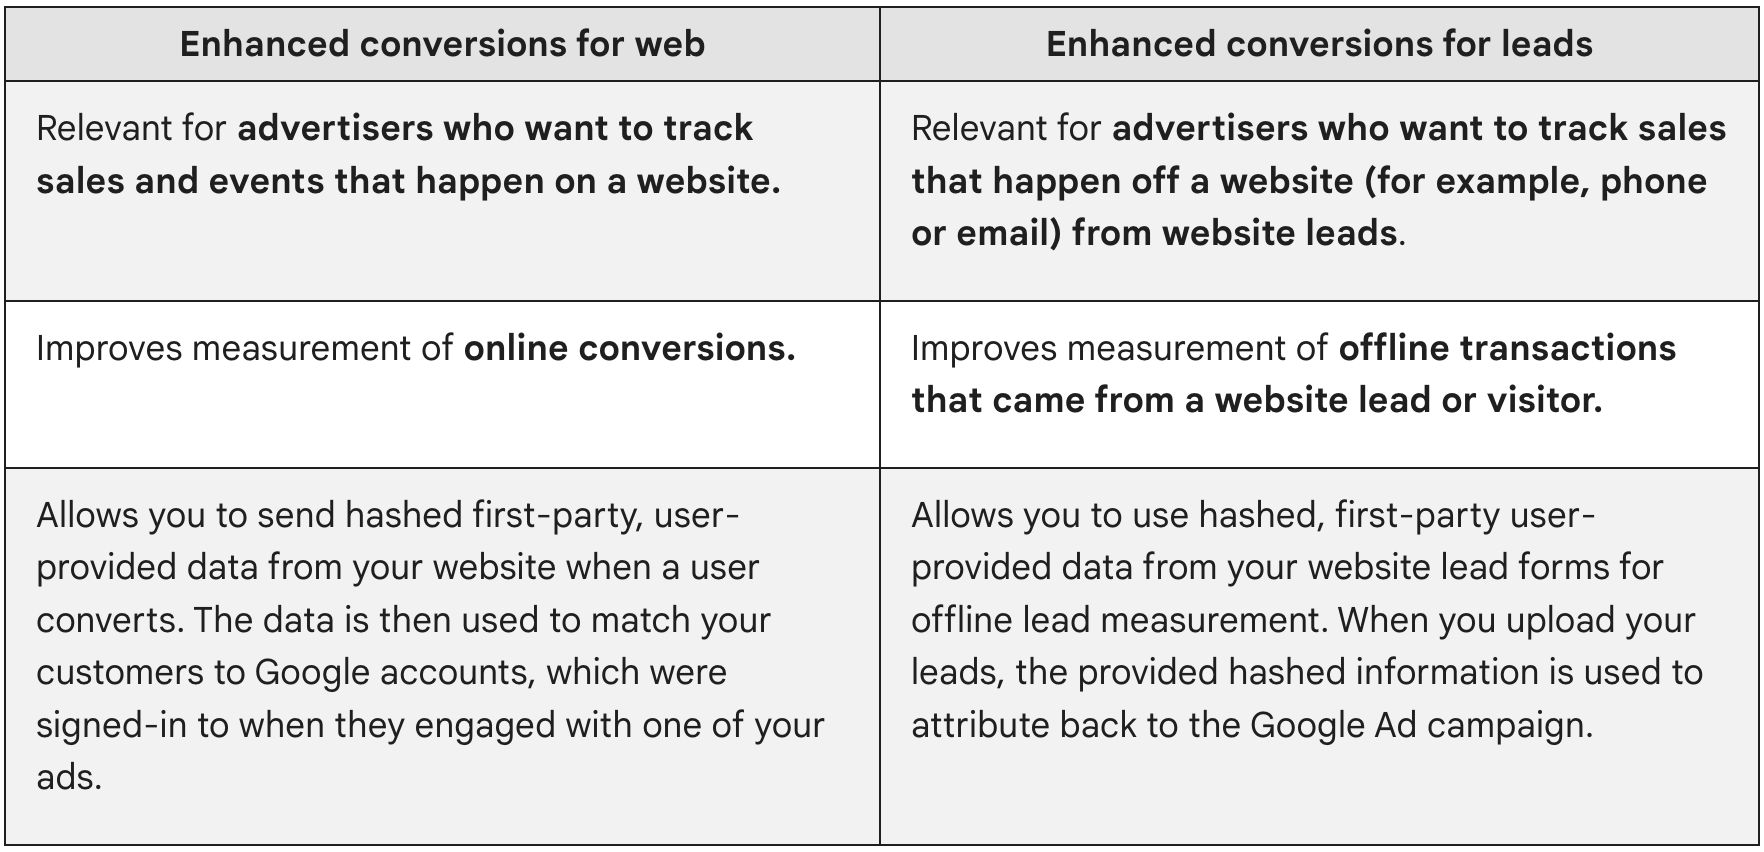 Conversion ที่ปรับปรุงแล้วสำหรับเว็บมีความเกี่ยวข้องกับผู้ลงโฆษณาที่ต้องการติดตามยอดขายและเหตุการณ์ที่เกิดขึ้นในเว็บไซต์ Conversion ที่ปรับปรุงแล้วสำหรับโอกาสในการขายมีประโยชน์สำหรับผู้ลงโฆษณาที่ต้องการติดตามยอดขายที่เกิดขึ้นนอกเว็บไซต์ (เช่น โทรศัพท์หรืออีเมล) จากโอกาสในการขายบนเว็บไซต์